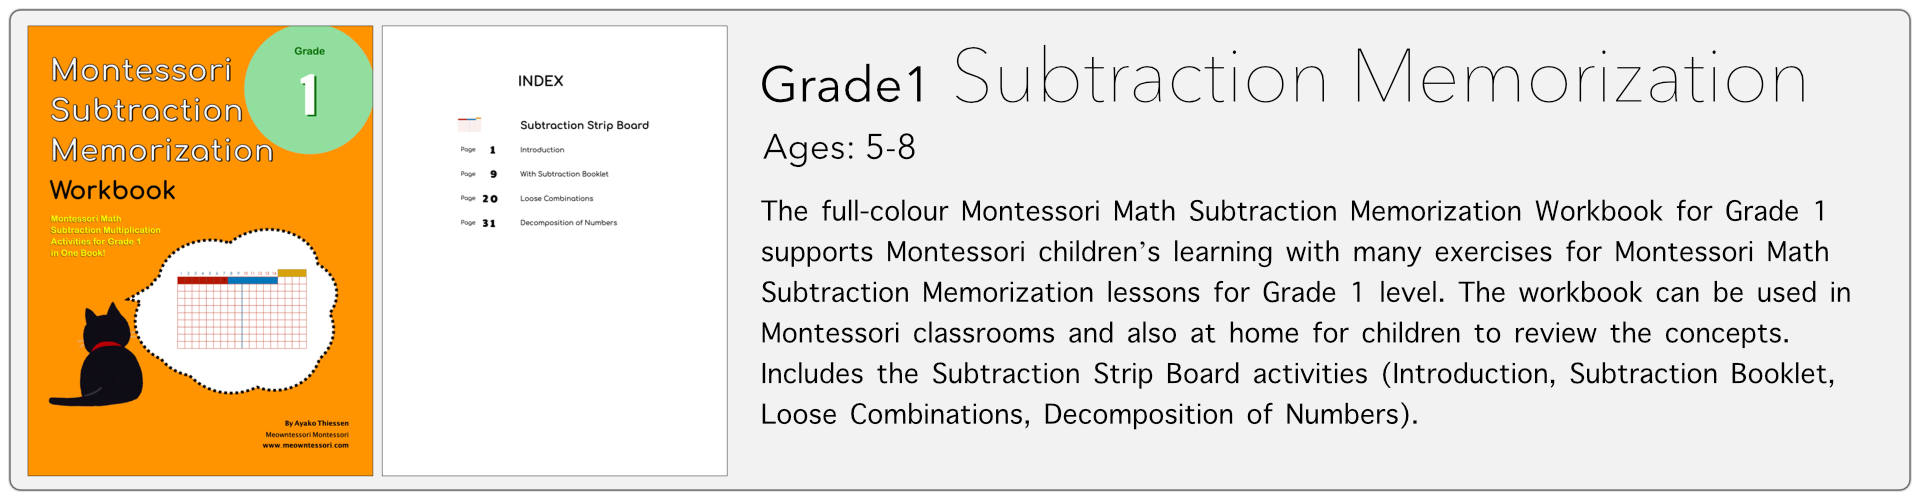 grade1 subtraction memorization